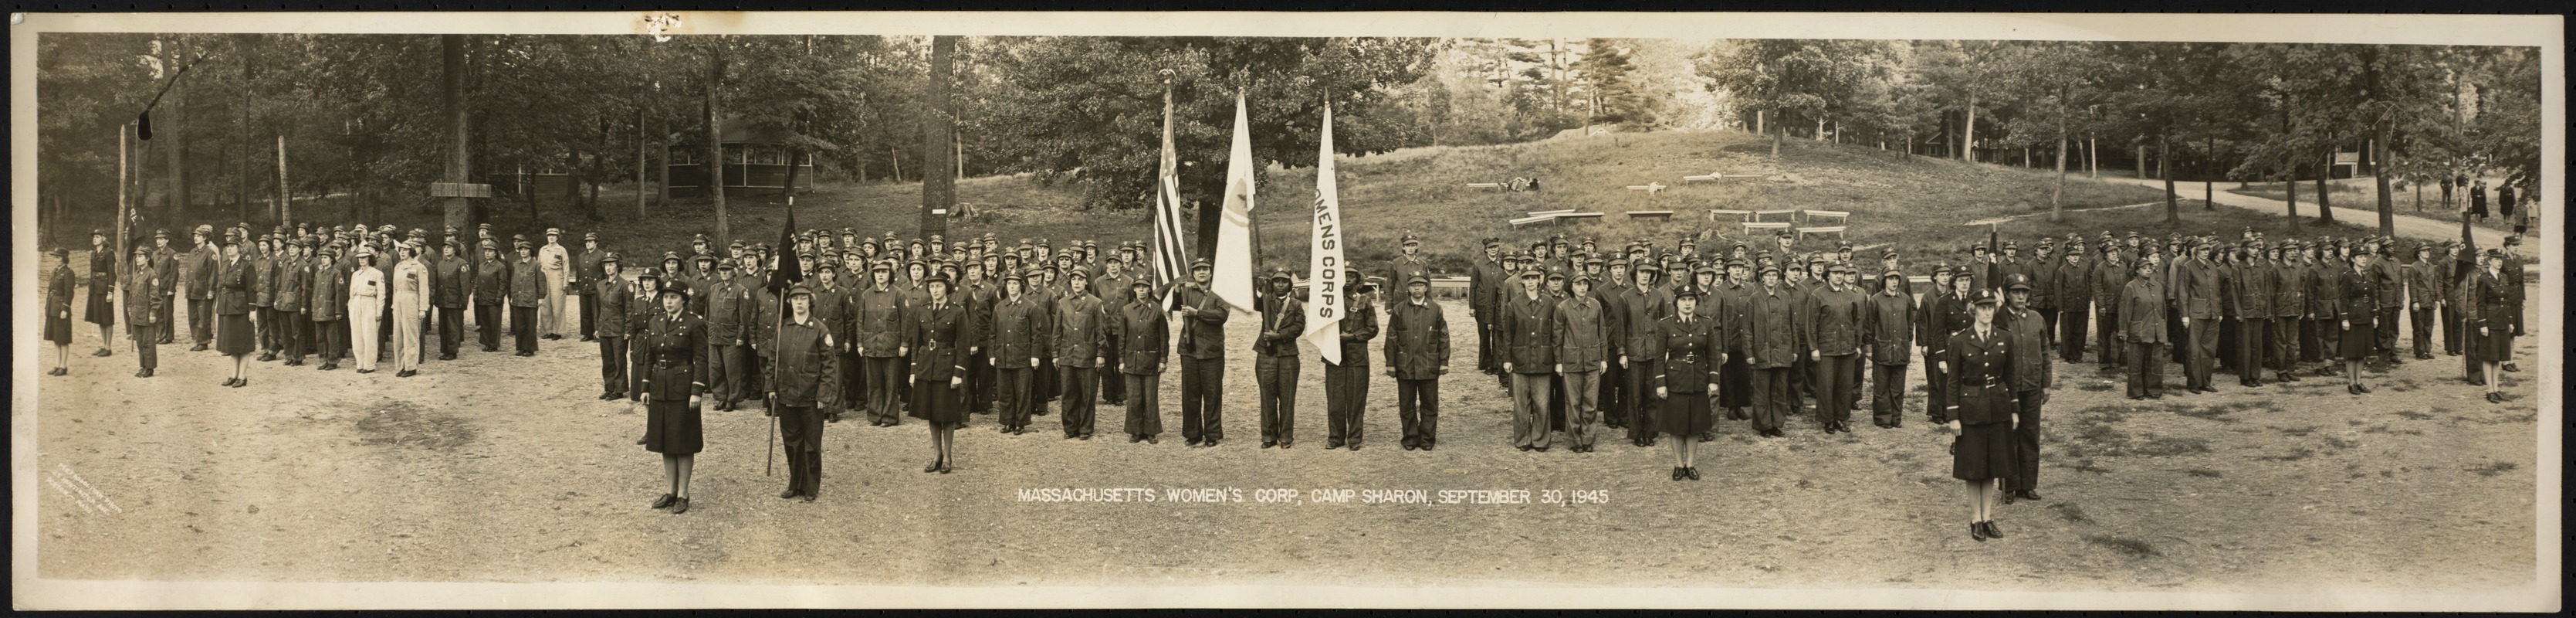 Massachusetts women's corp, Camp Sharon